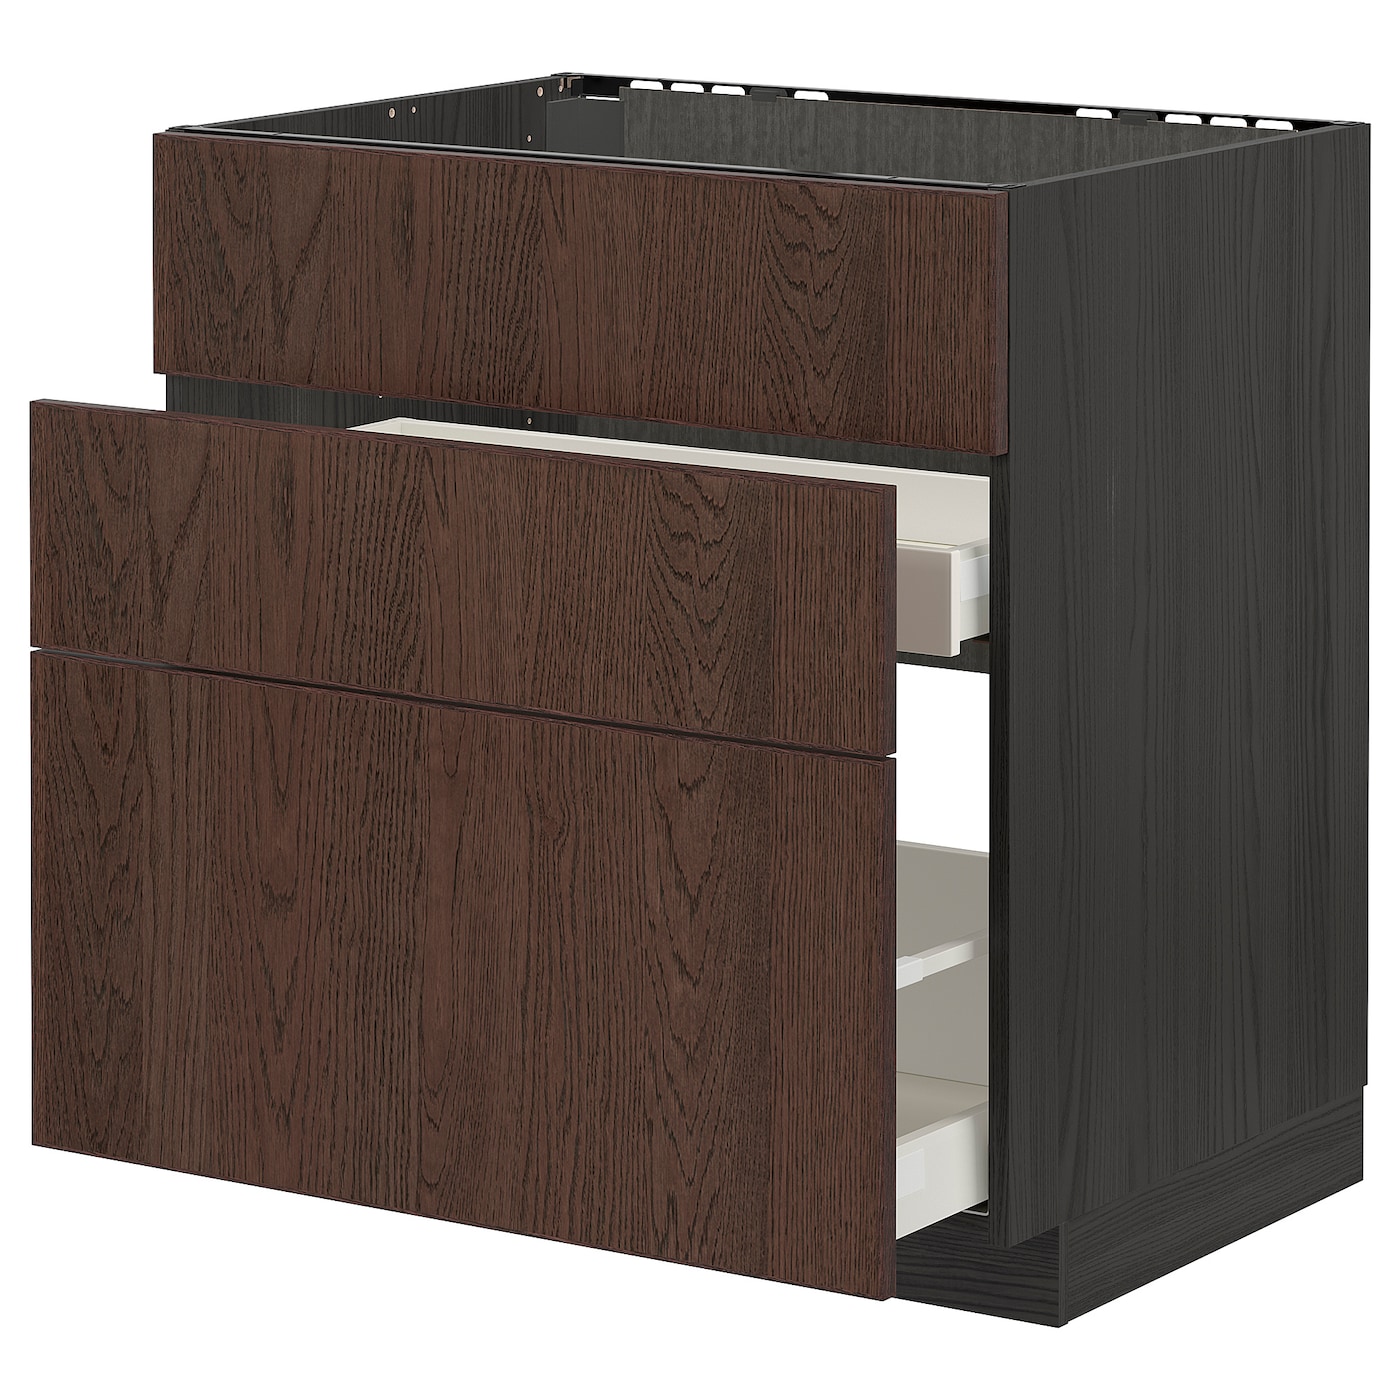 Напольный кухонный шкаф  - IKEA METOD MAXIMERA, 88x62x80см, черный/коричневый, МЕТОД МАКСИМЕРА ИКЕА